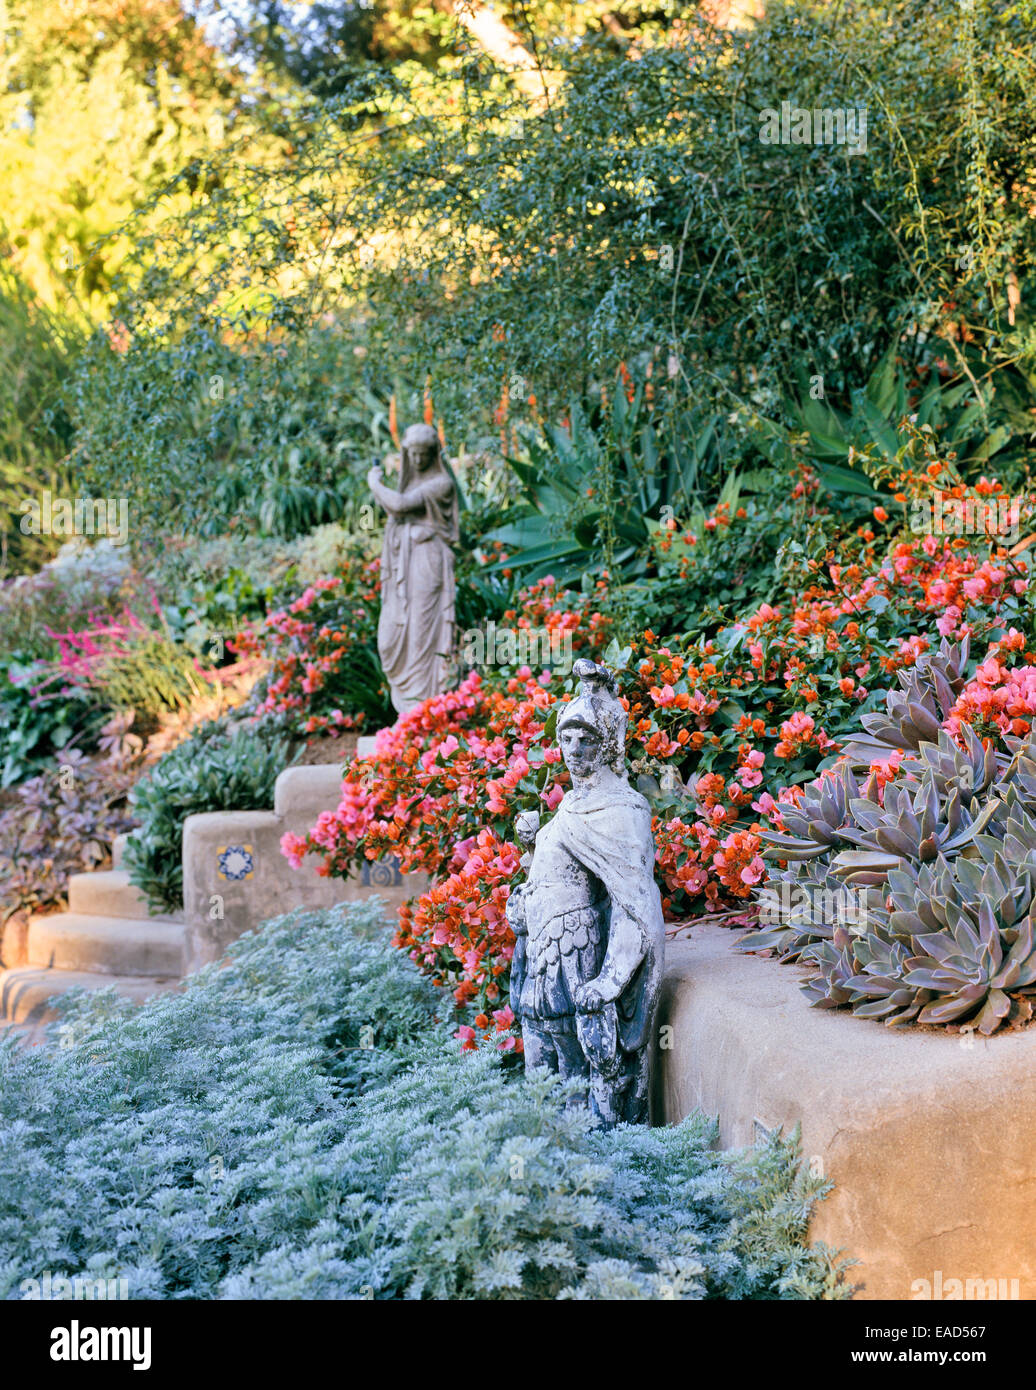 flowering desert garden with sculpture in Los Angeles Stock Photo